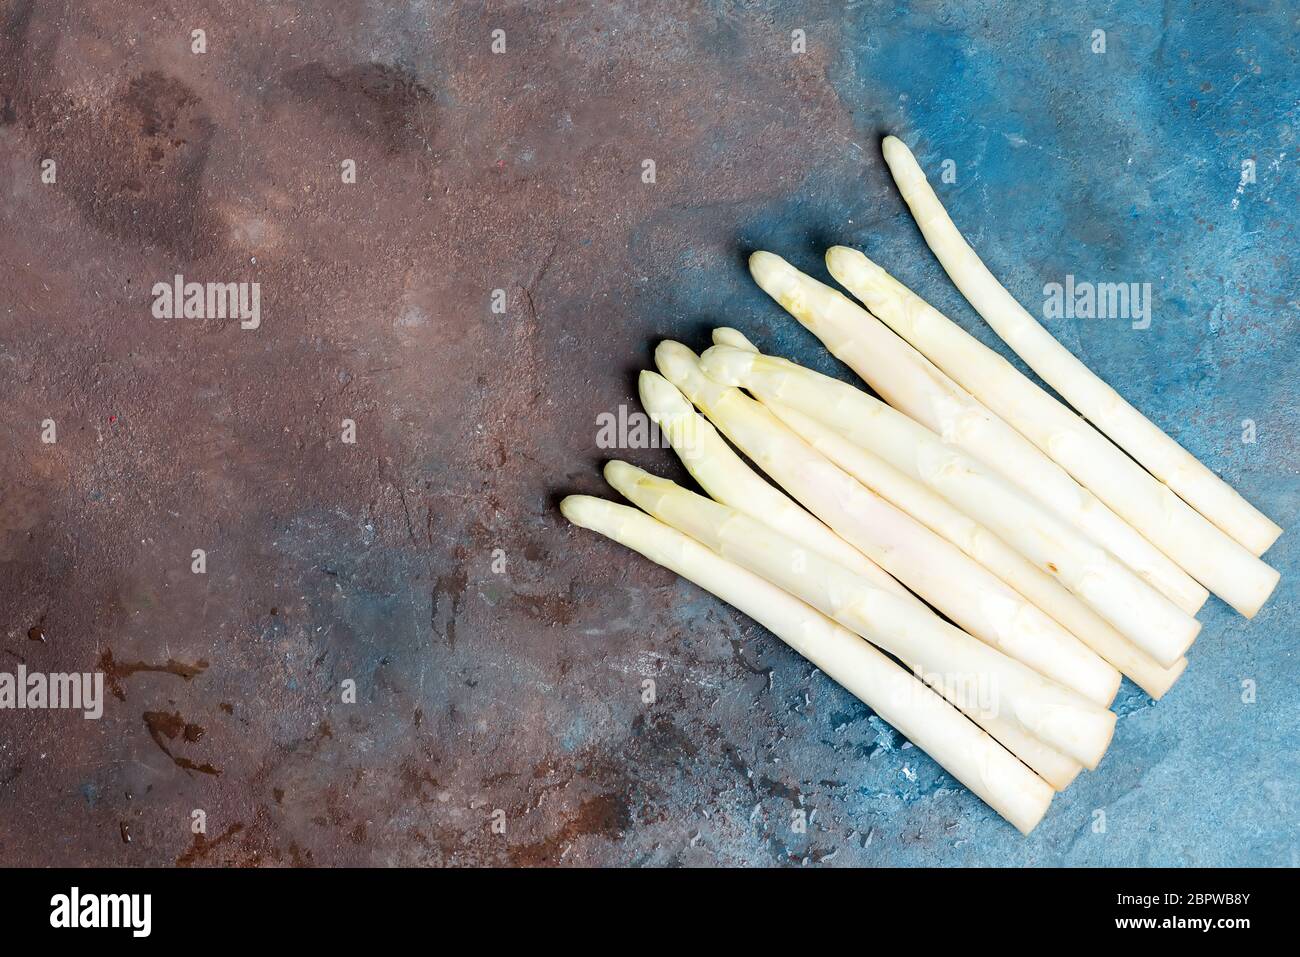 Le cesoie bianche di asparagi biologici appena selezionate per cucinare cibi vegetariani sani su fondo di cemento scuro. Foto Stock